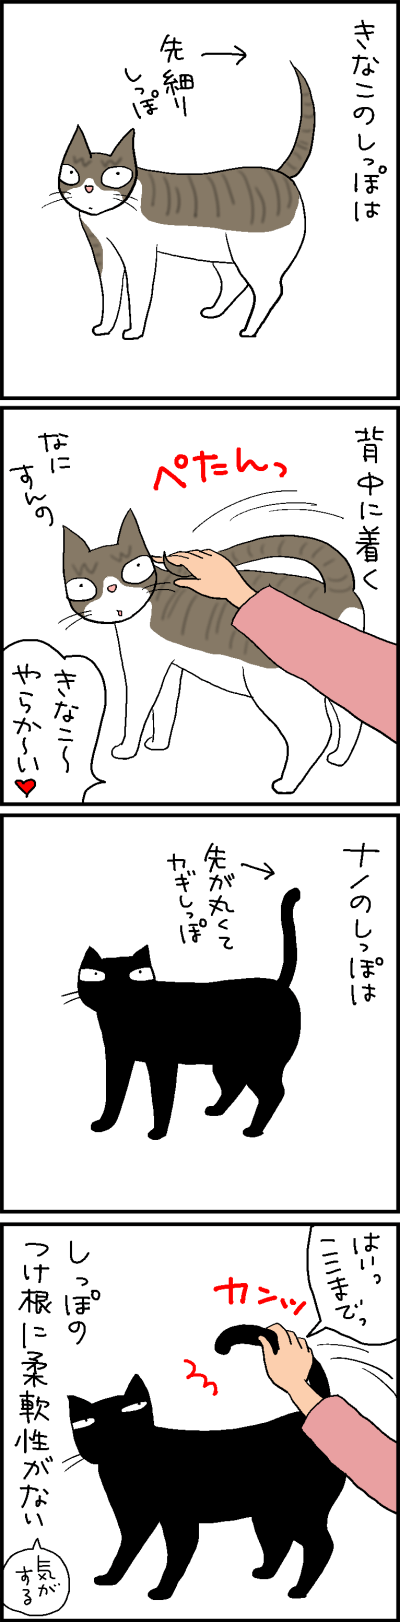 猫のしっぽの軟らかさの4コマ猫漫画